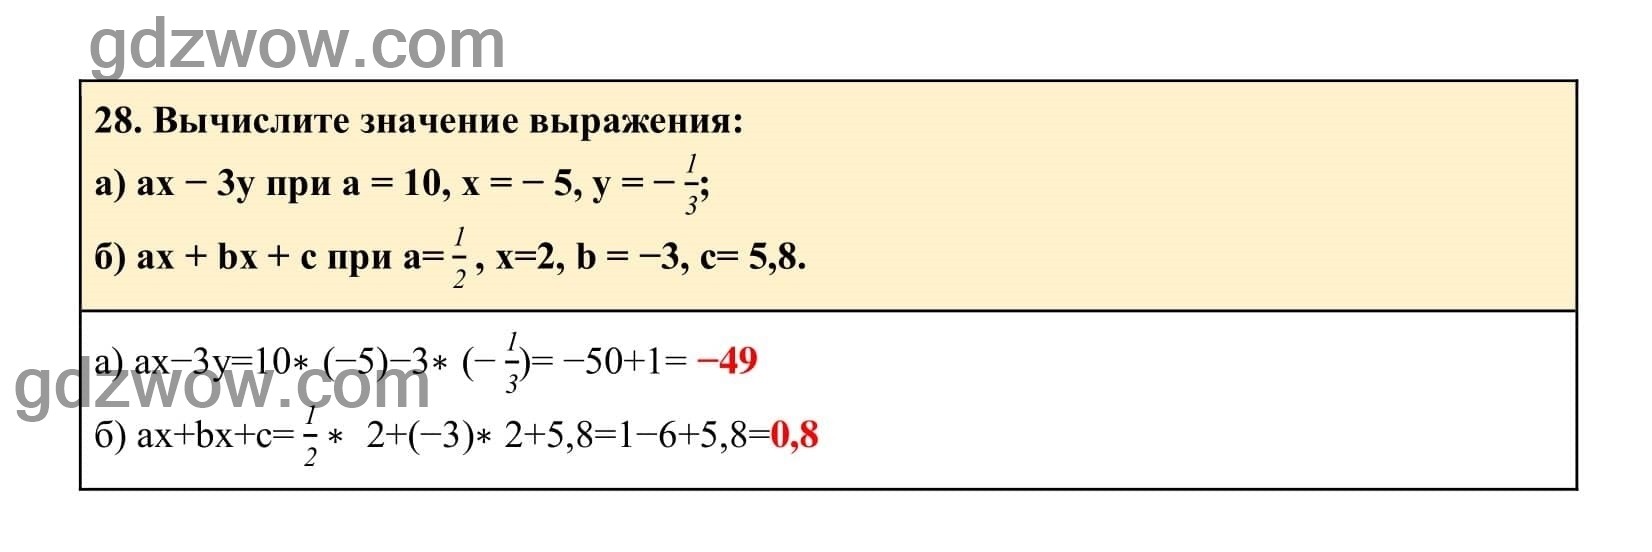 Упражнение 28 - ГДЗ по Алгебре 7 класс Учебник Макарычев (решебник) - GDZwow